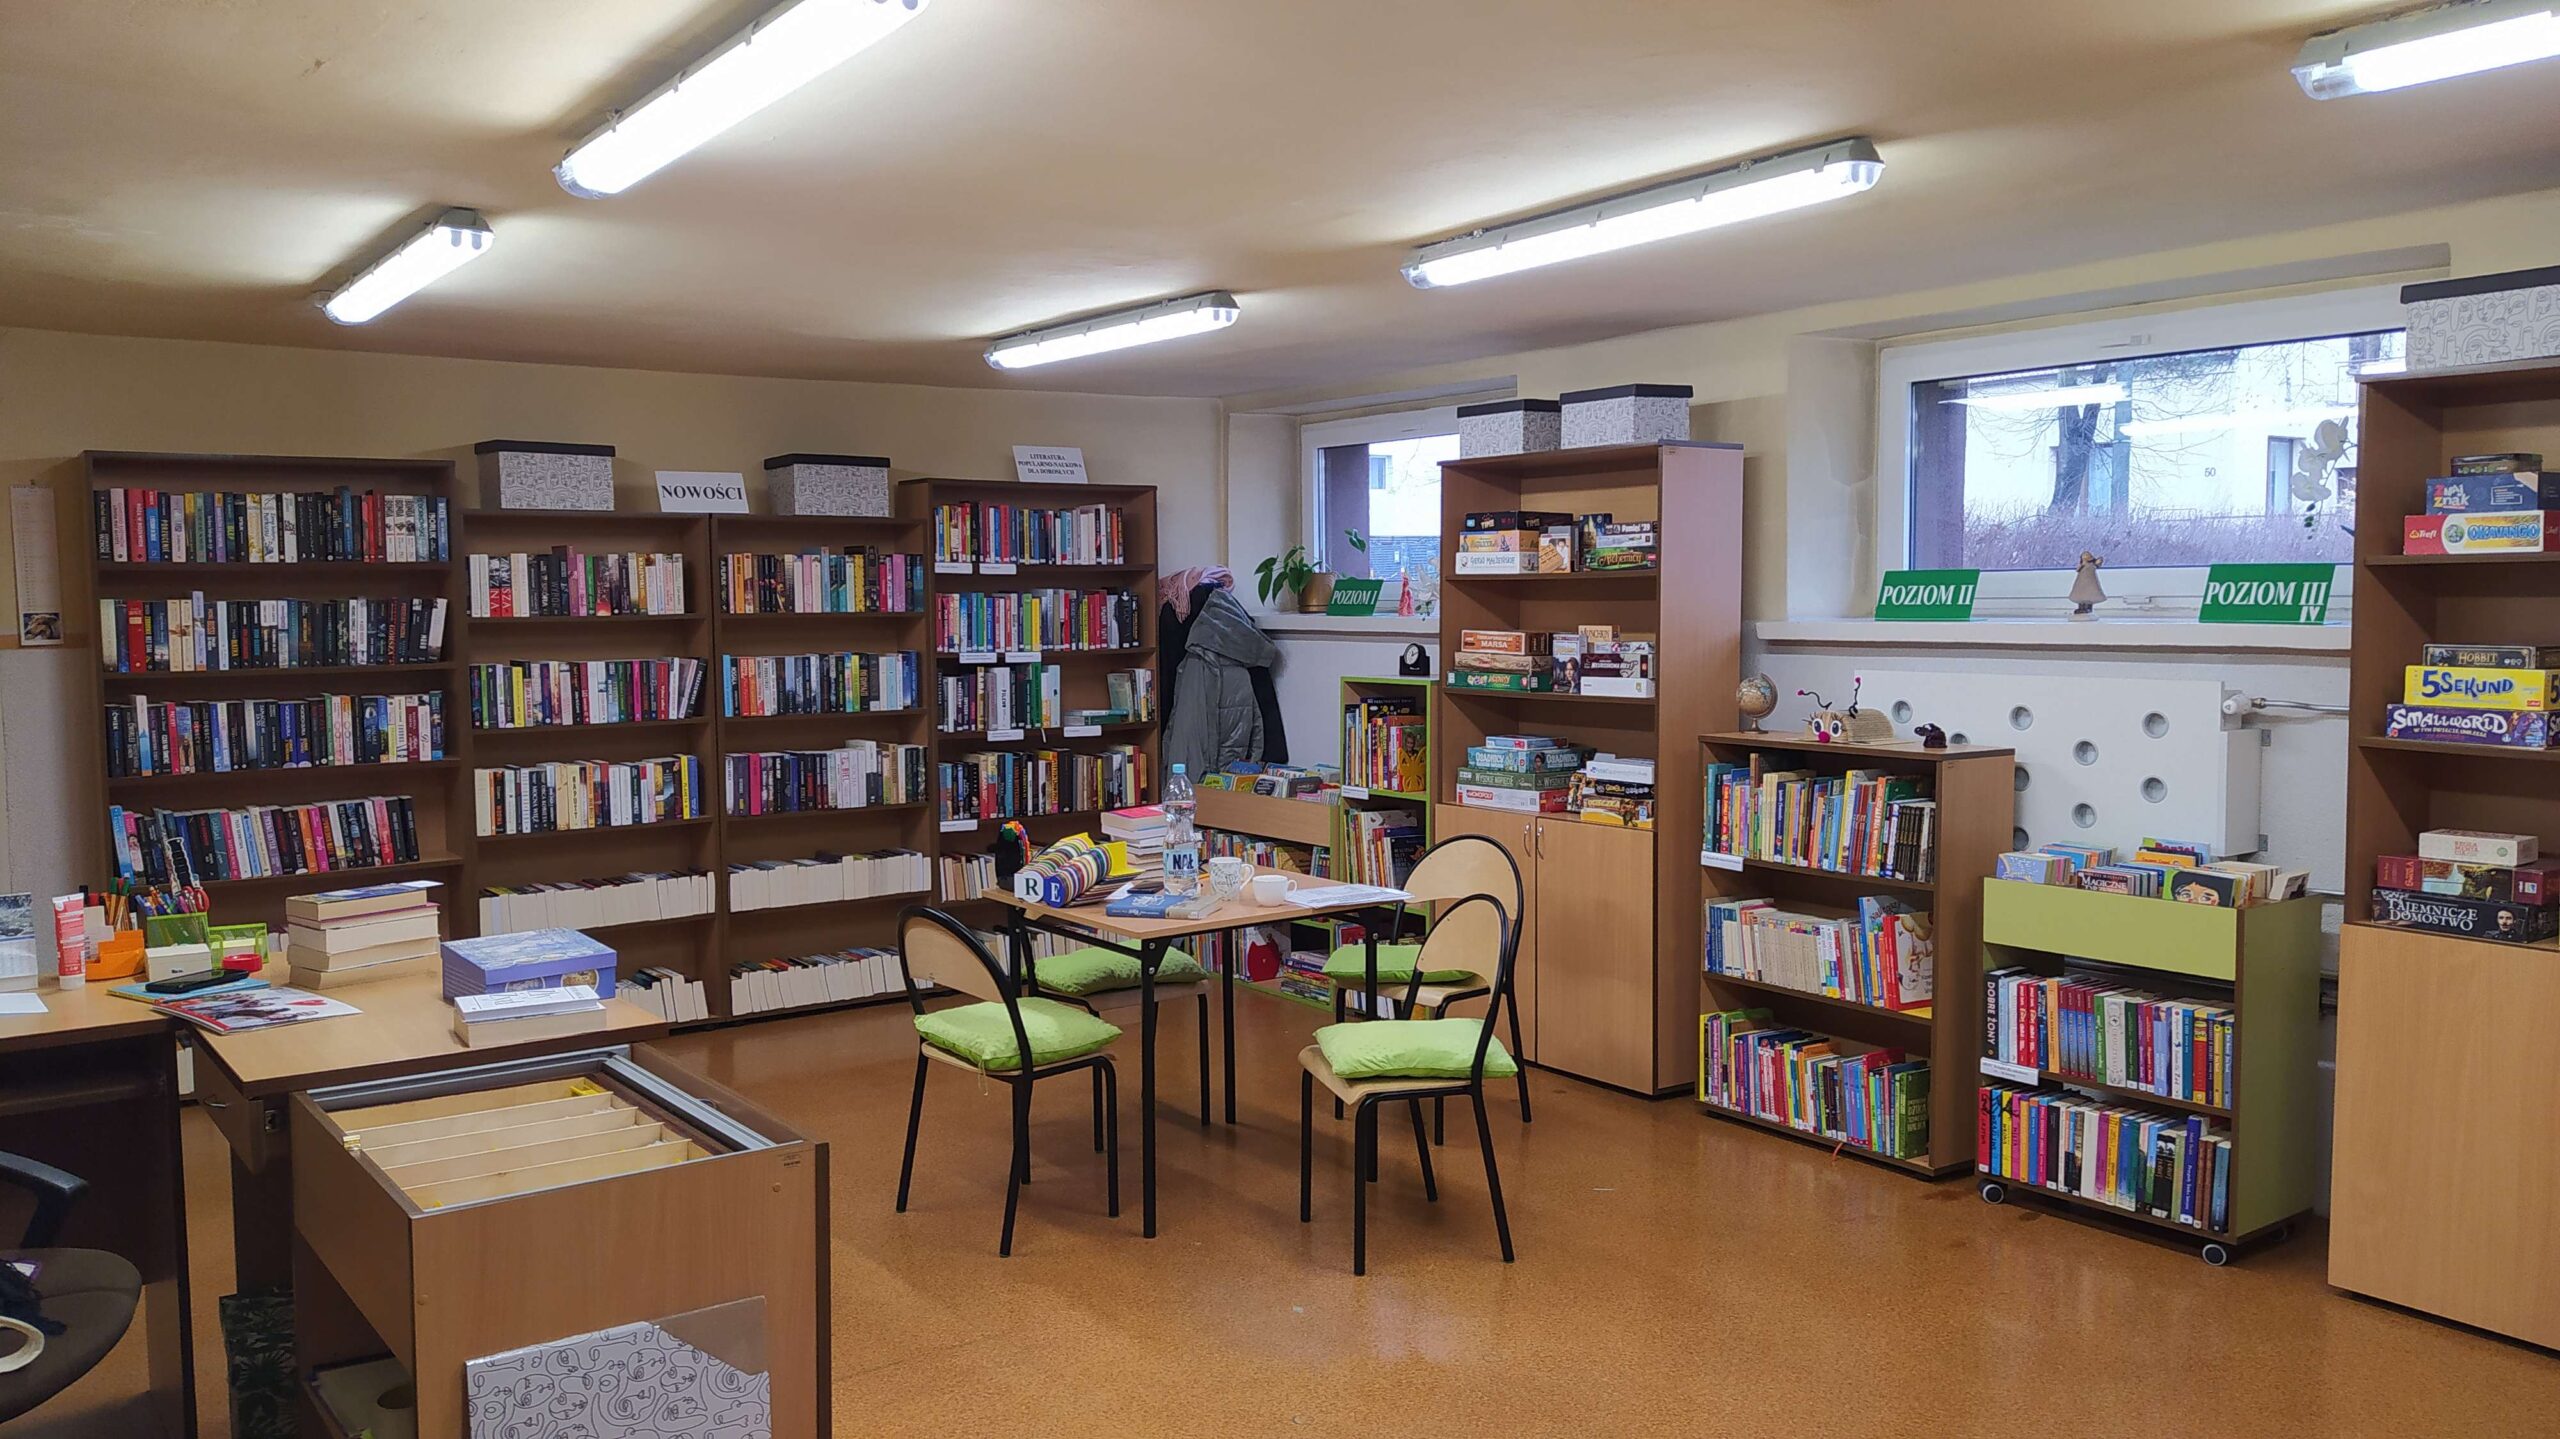 Filia 15 Biblioteki Publicznej w Częstochowie tymczasowo zmienia siedzibę 1